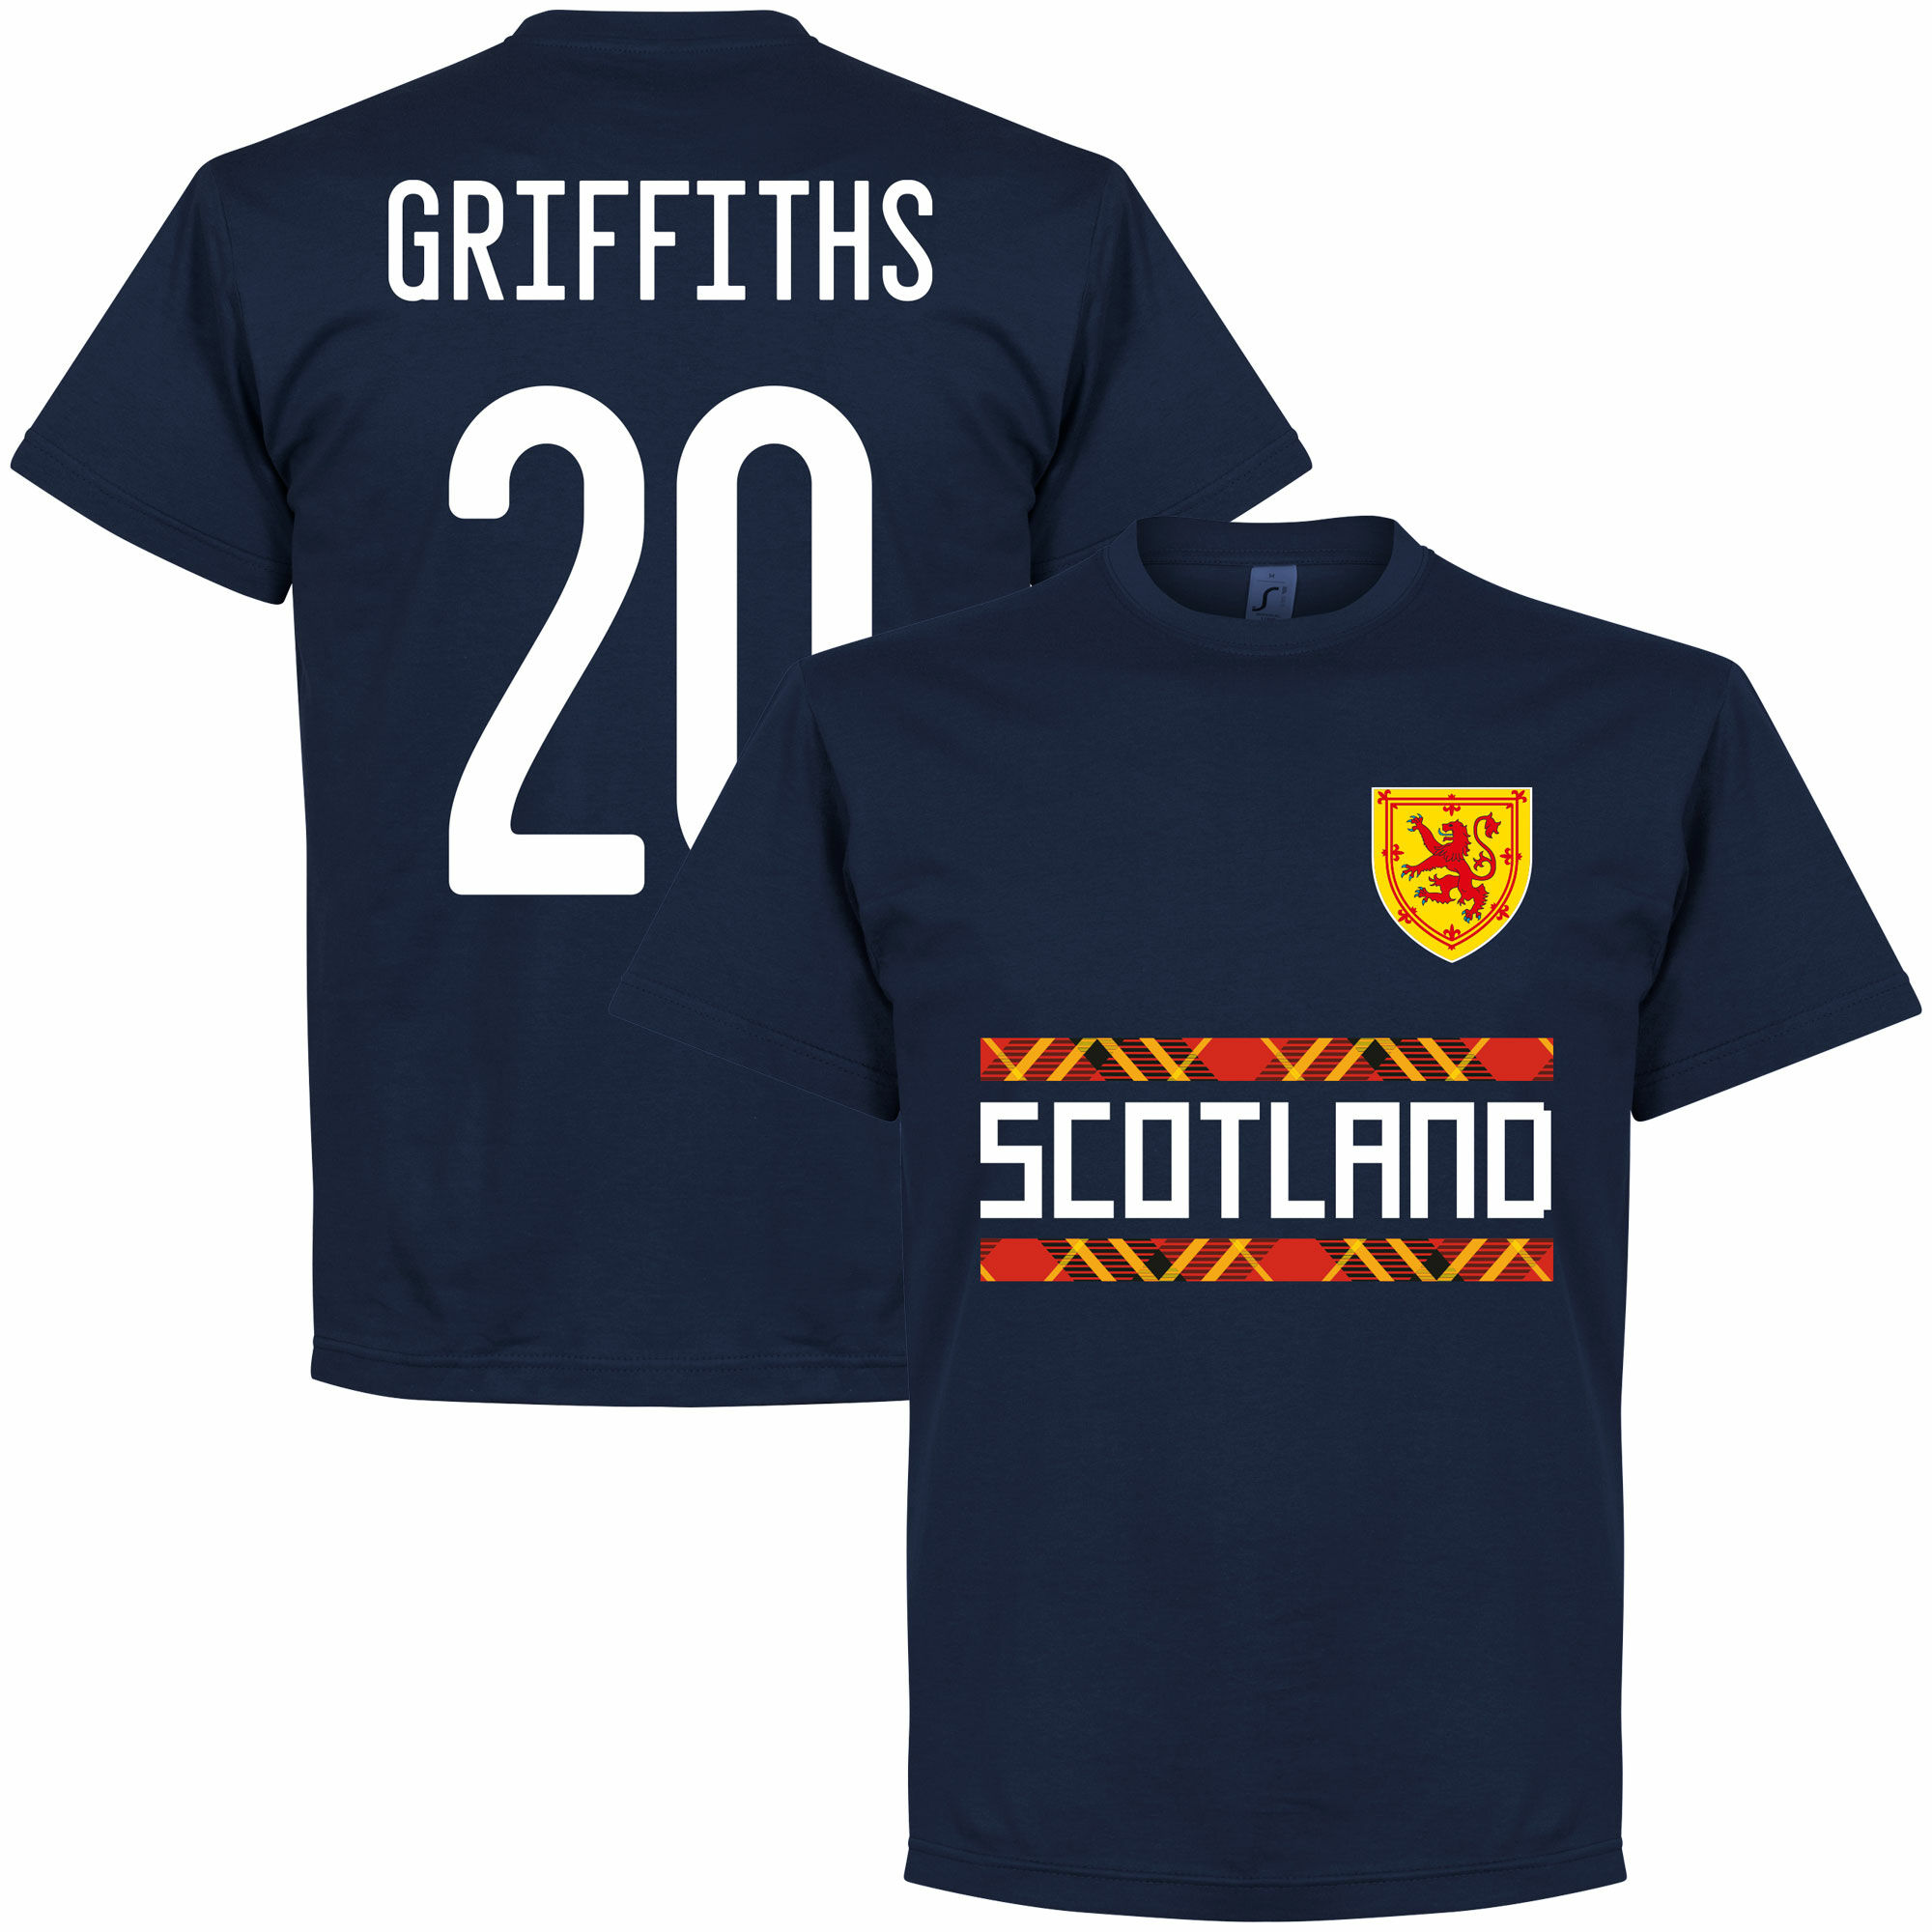 Skotsko - Tričko - Leigh Griffiths, číslo 20, modré